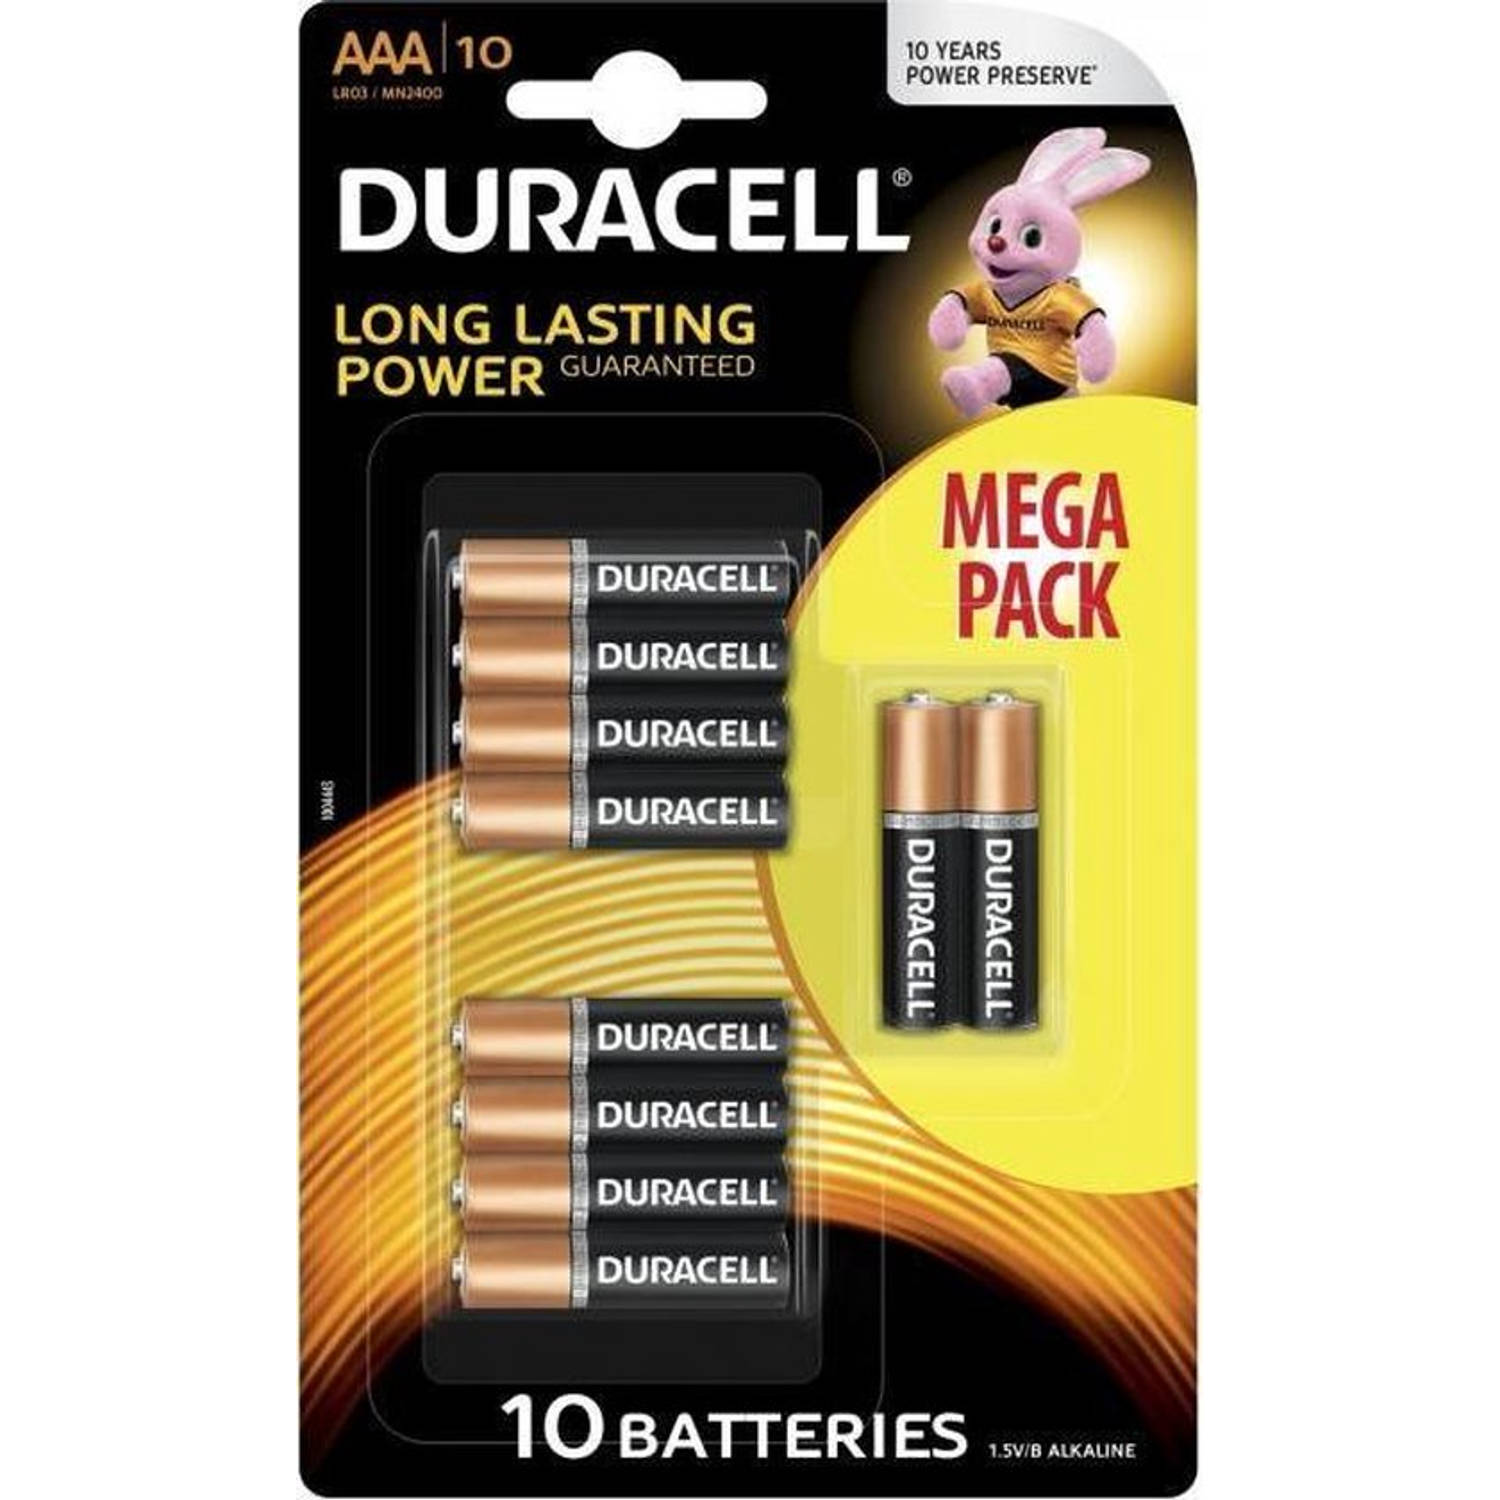 10 Stuks - Duracell MEGA PACK LR03 / AAA / R03 / MN 2400 1.5V alkaline batterij